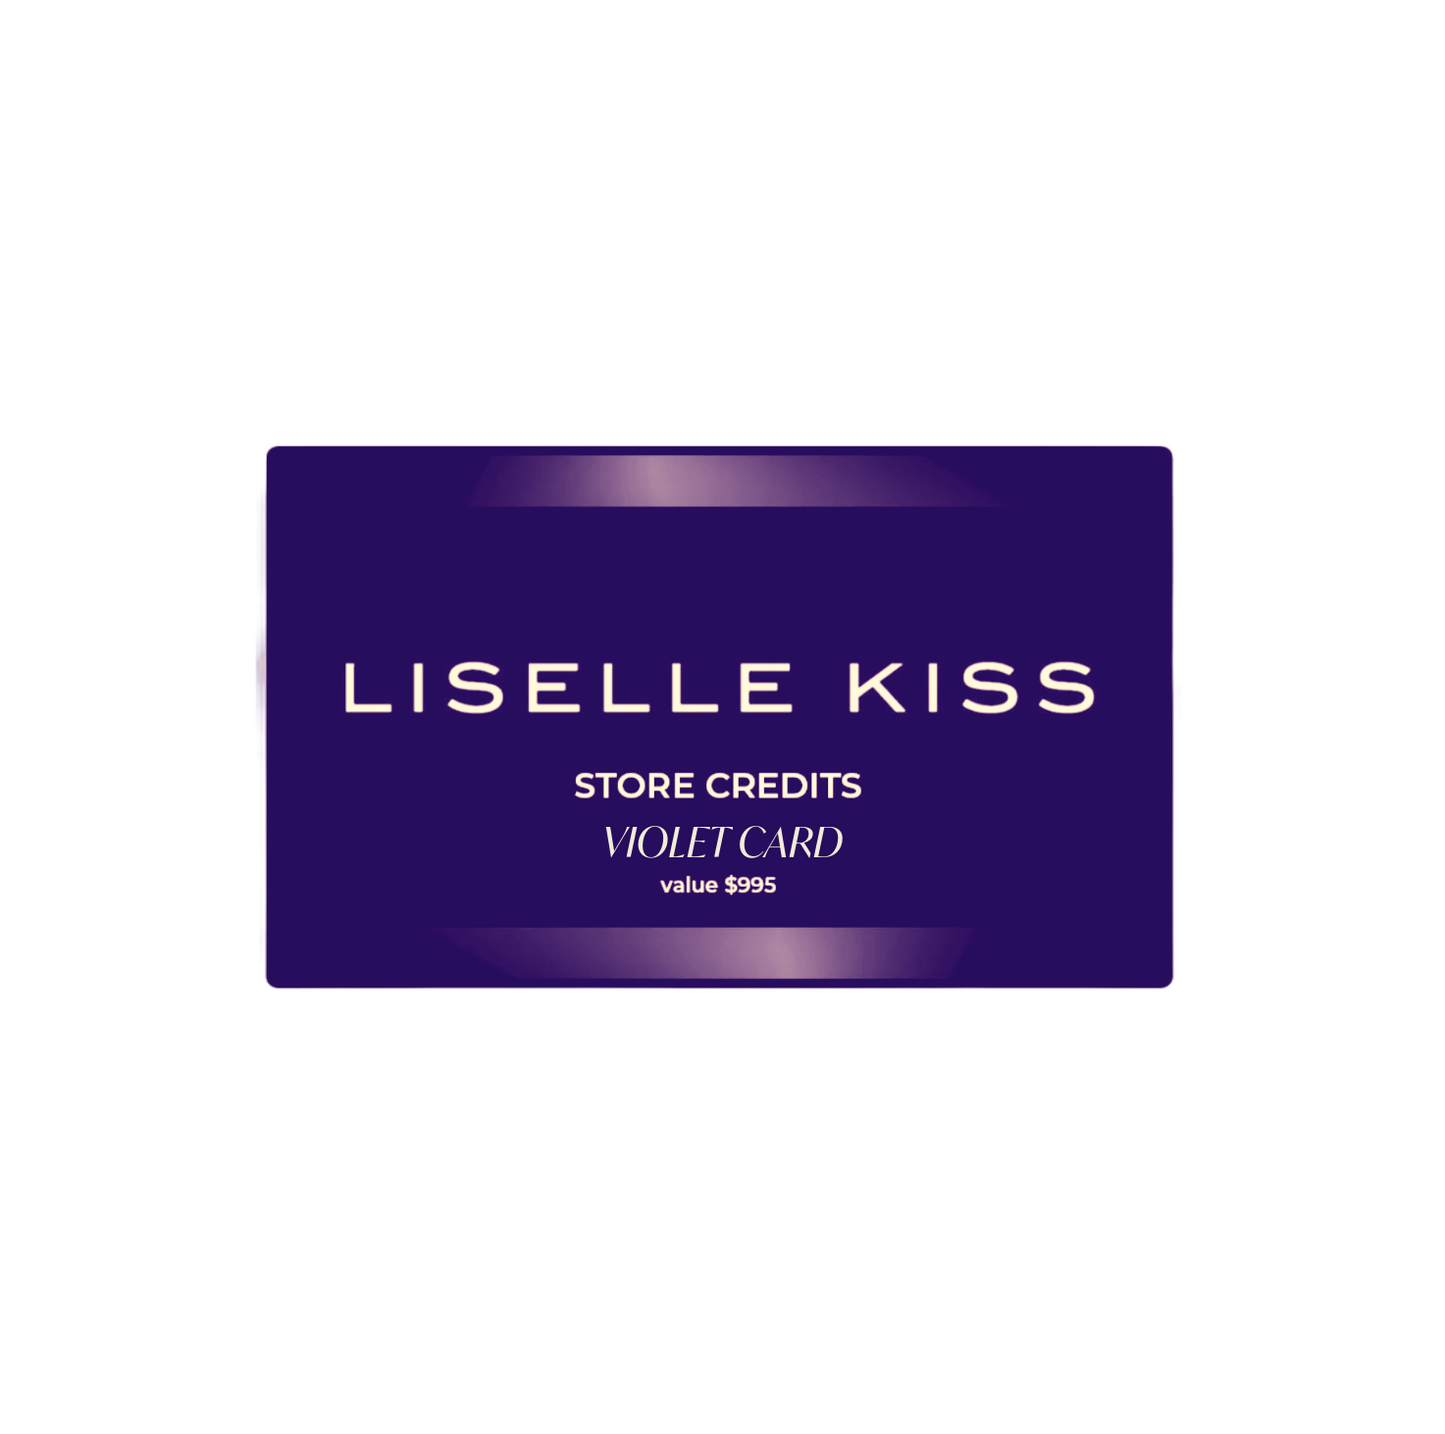 LISELLE KISS CLUB PATRON'S CARD